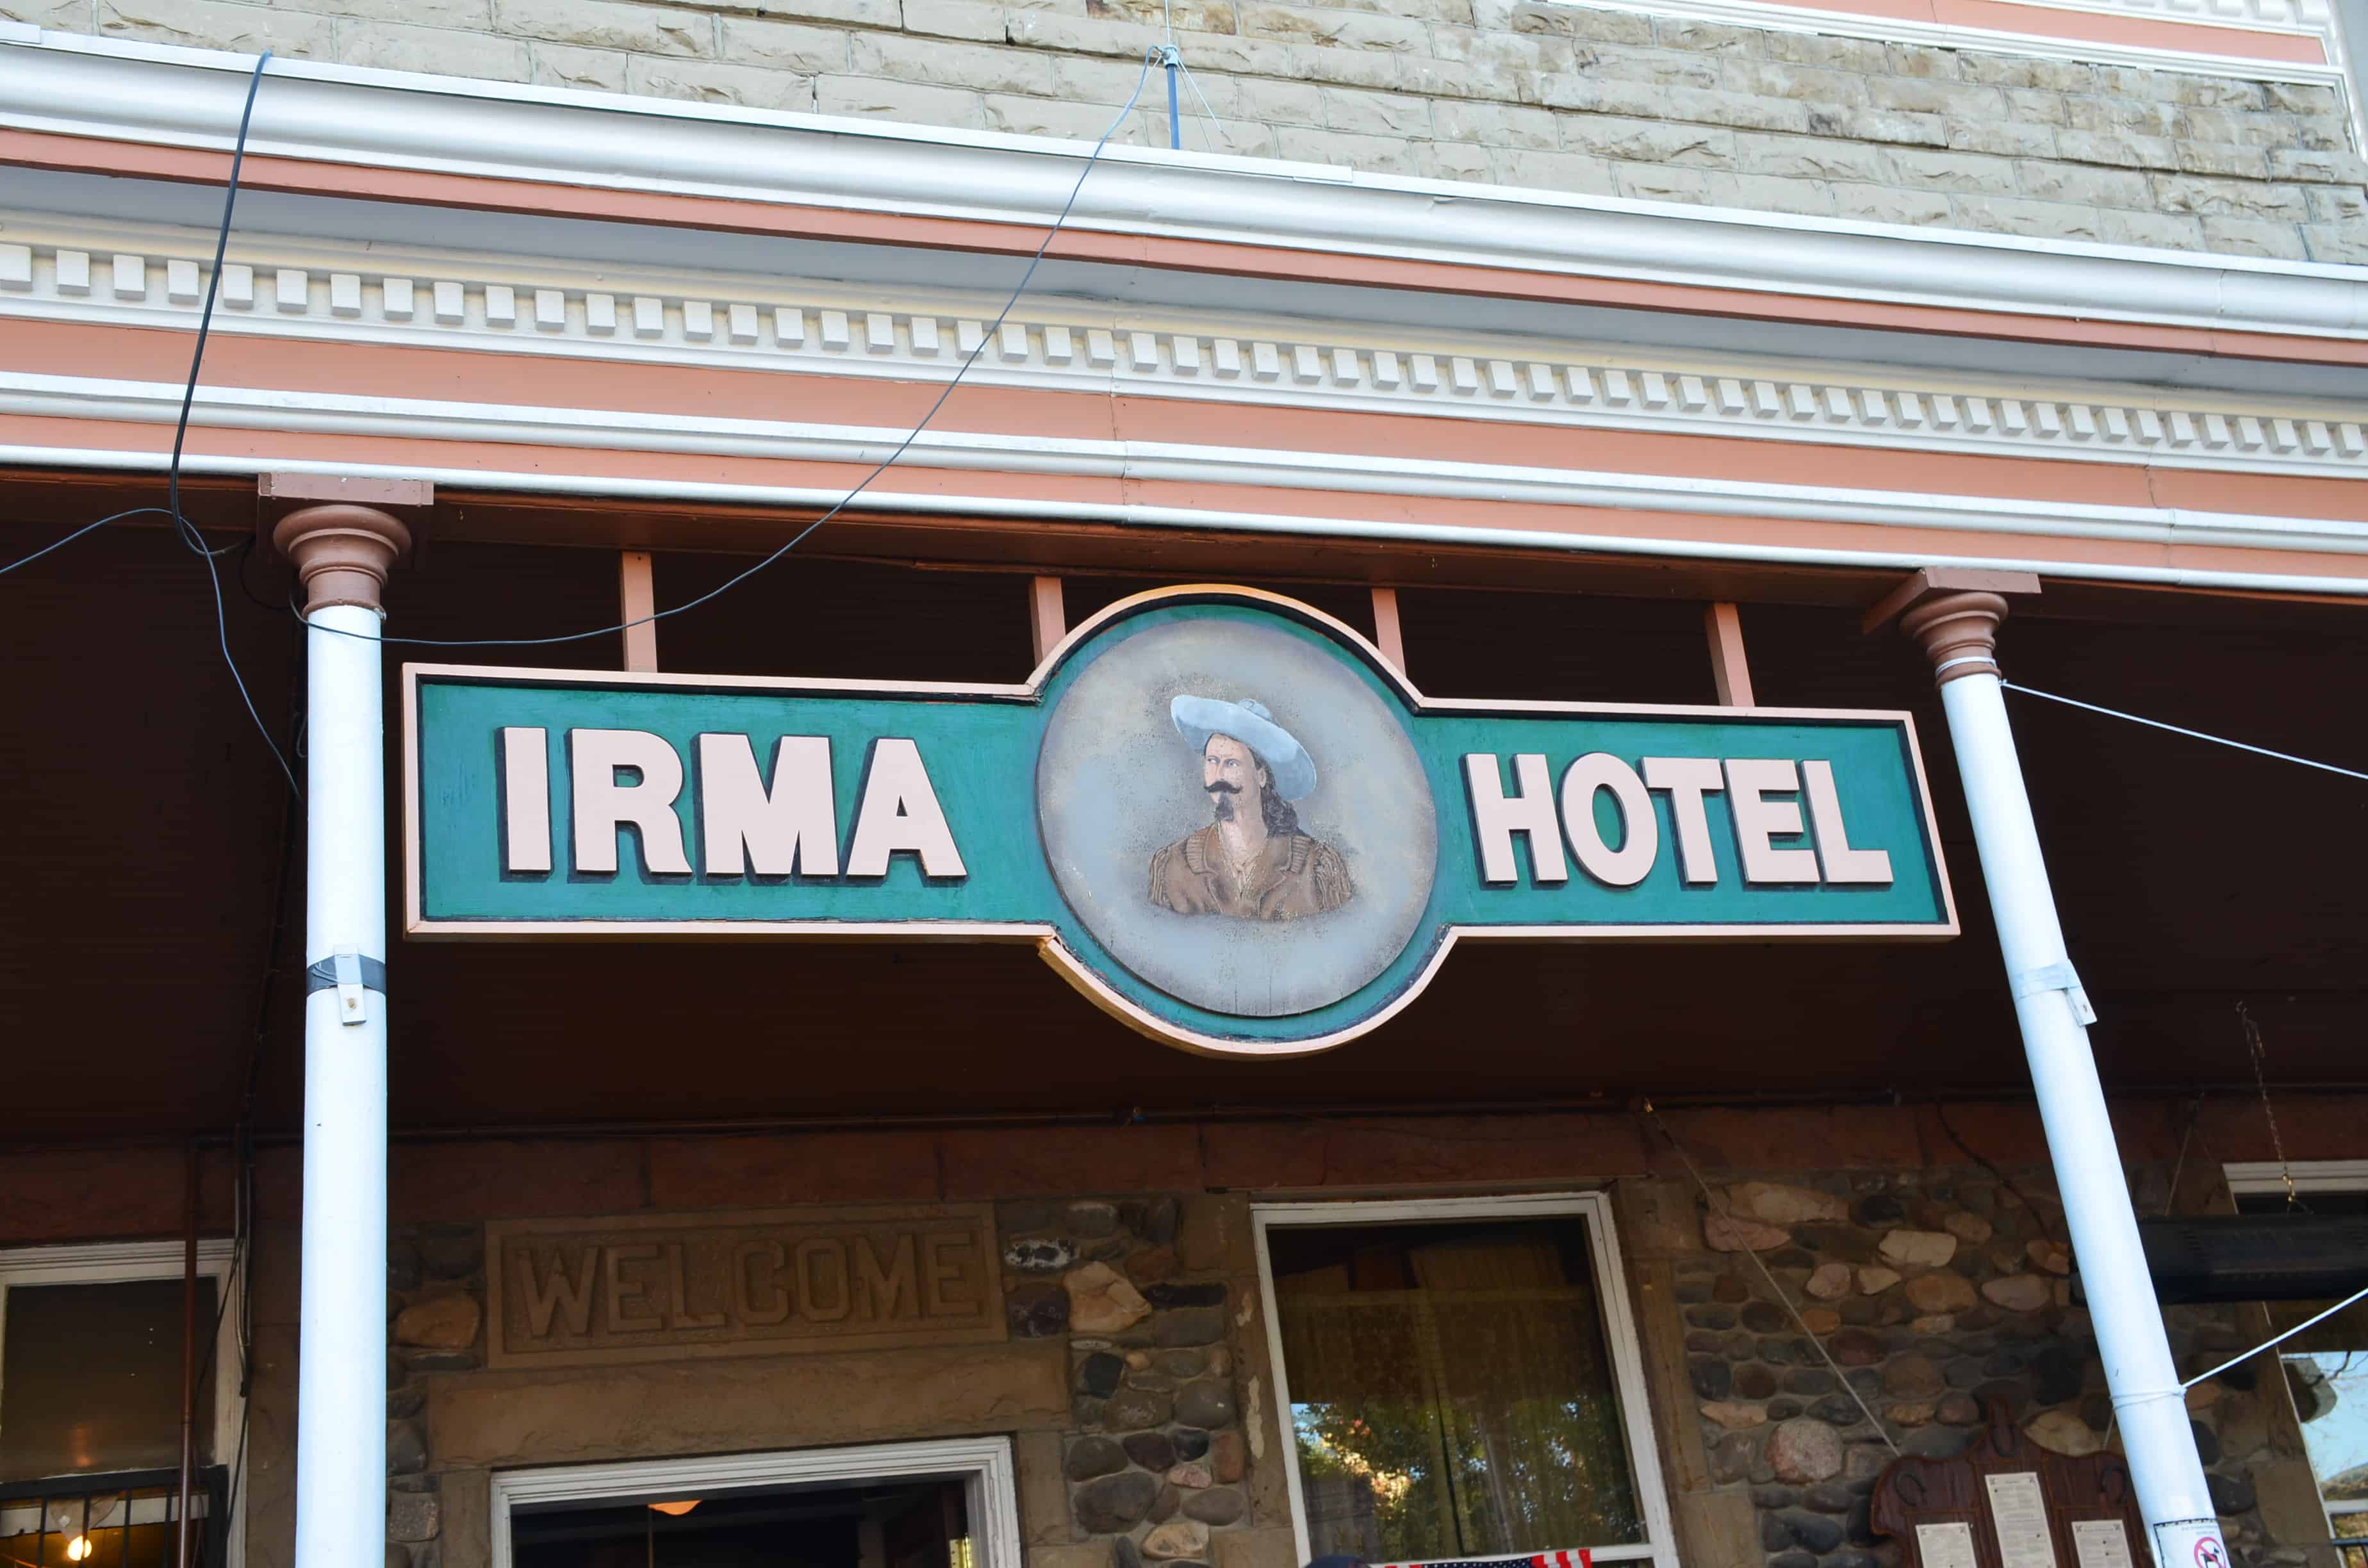 Irma Hotel in Cody, Wyoming